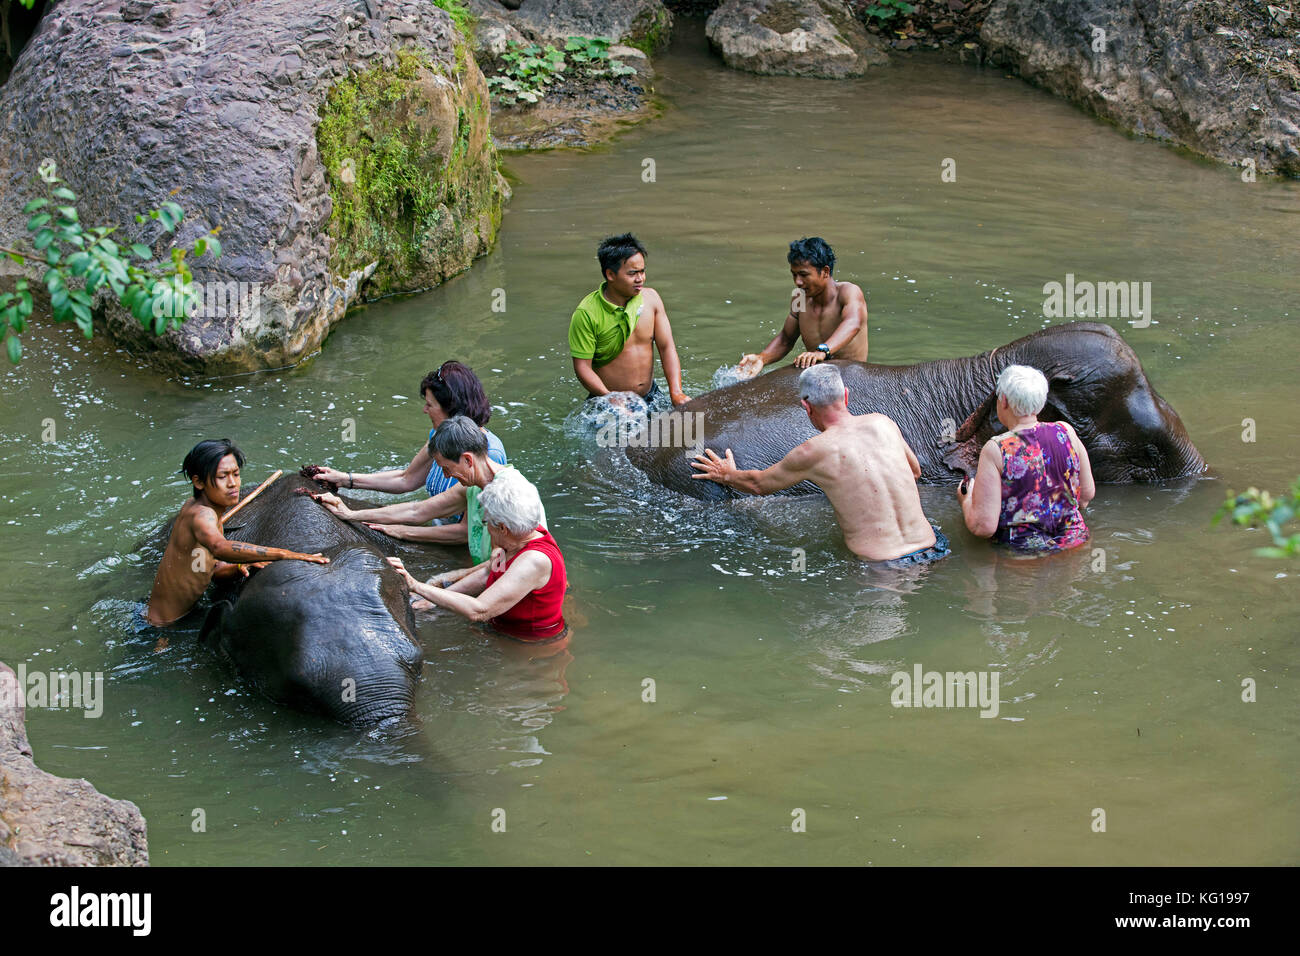 Aider les touristes des éléphants asiatiques / lavage éléphant d'Asie (Elephas maximus) dans la rivière au camp d'éléphant au Myanmar / Birmanie Banque D'Images